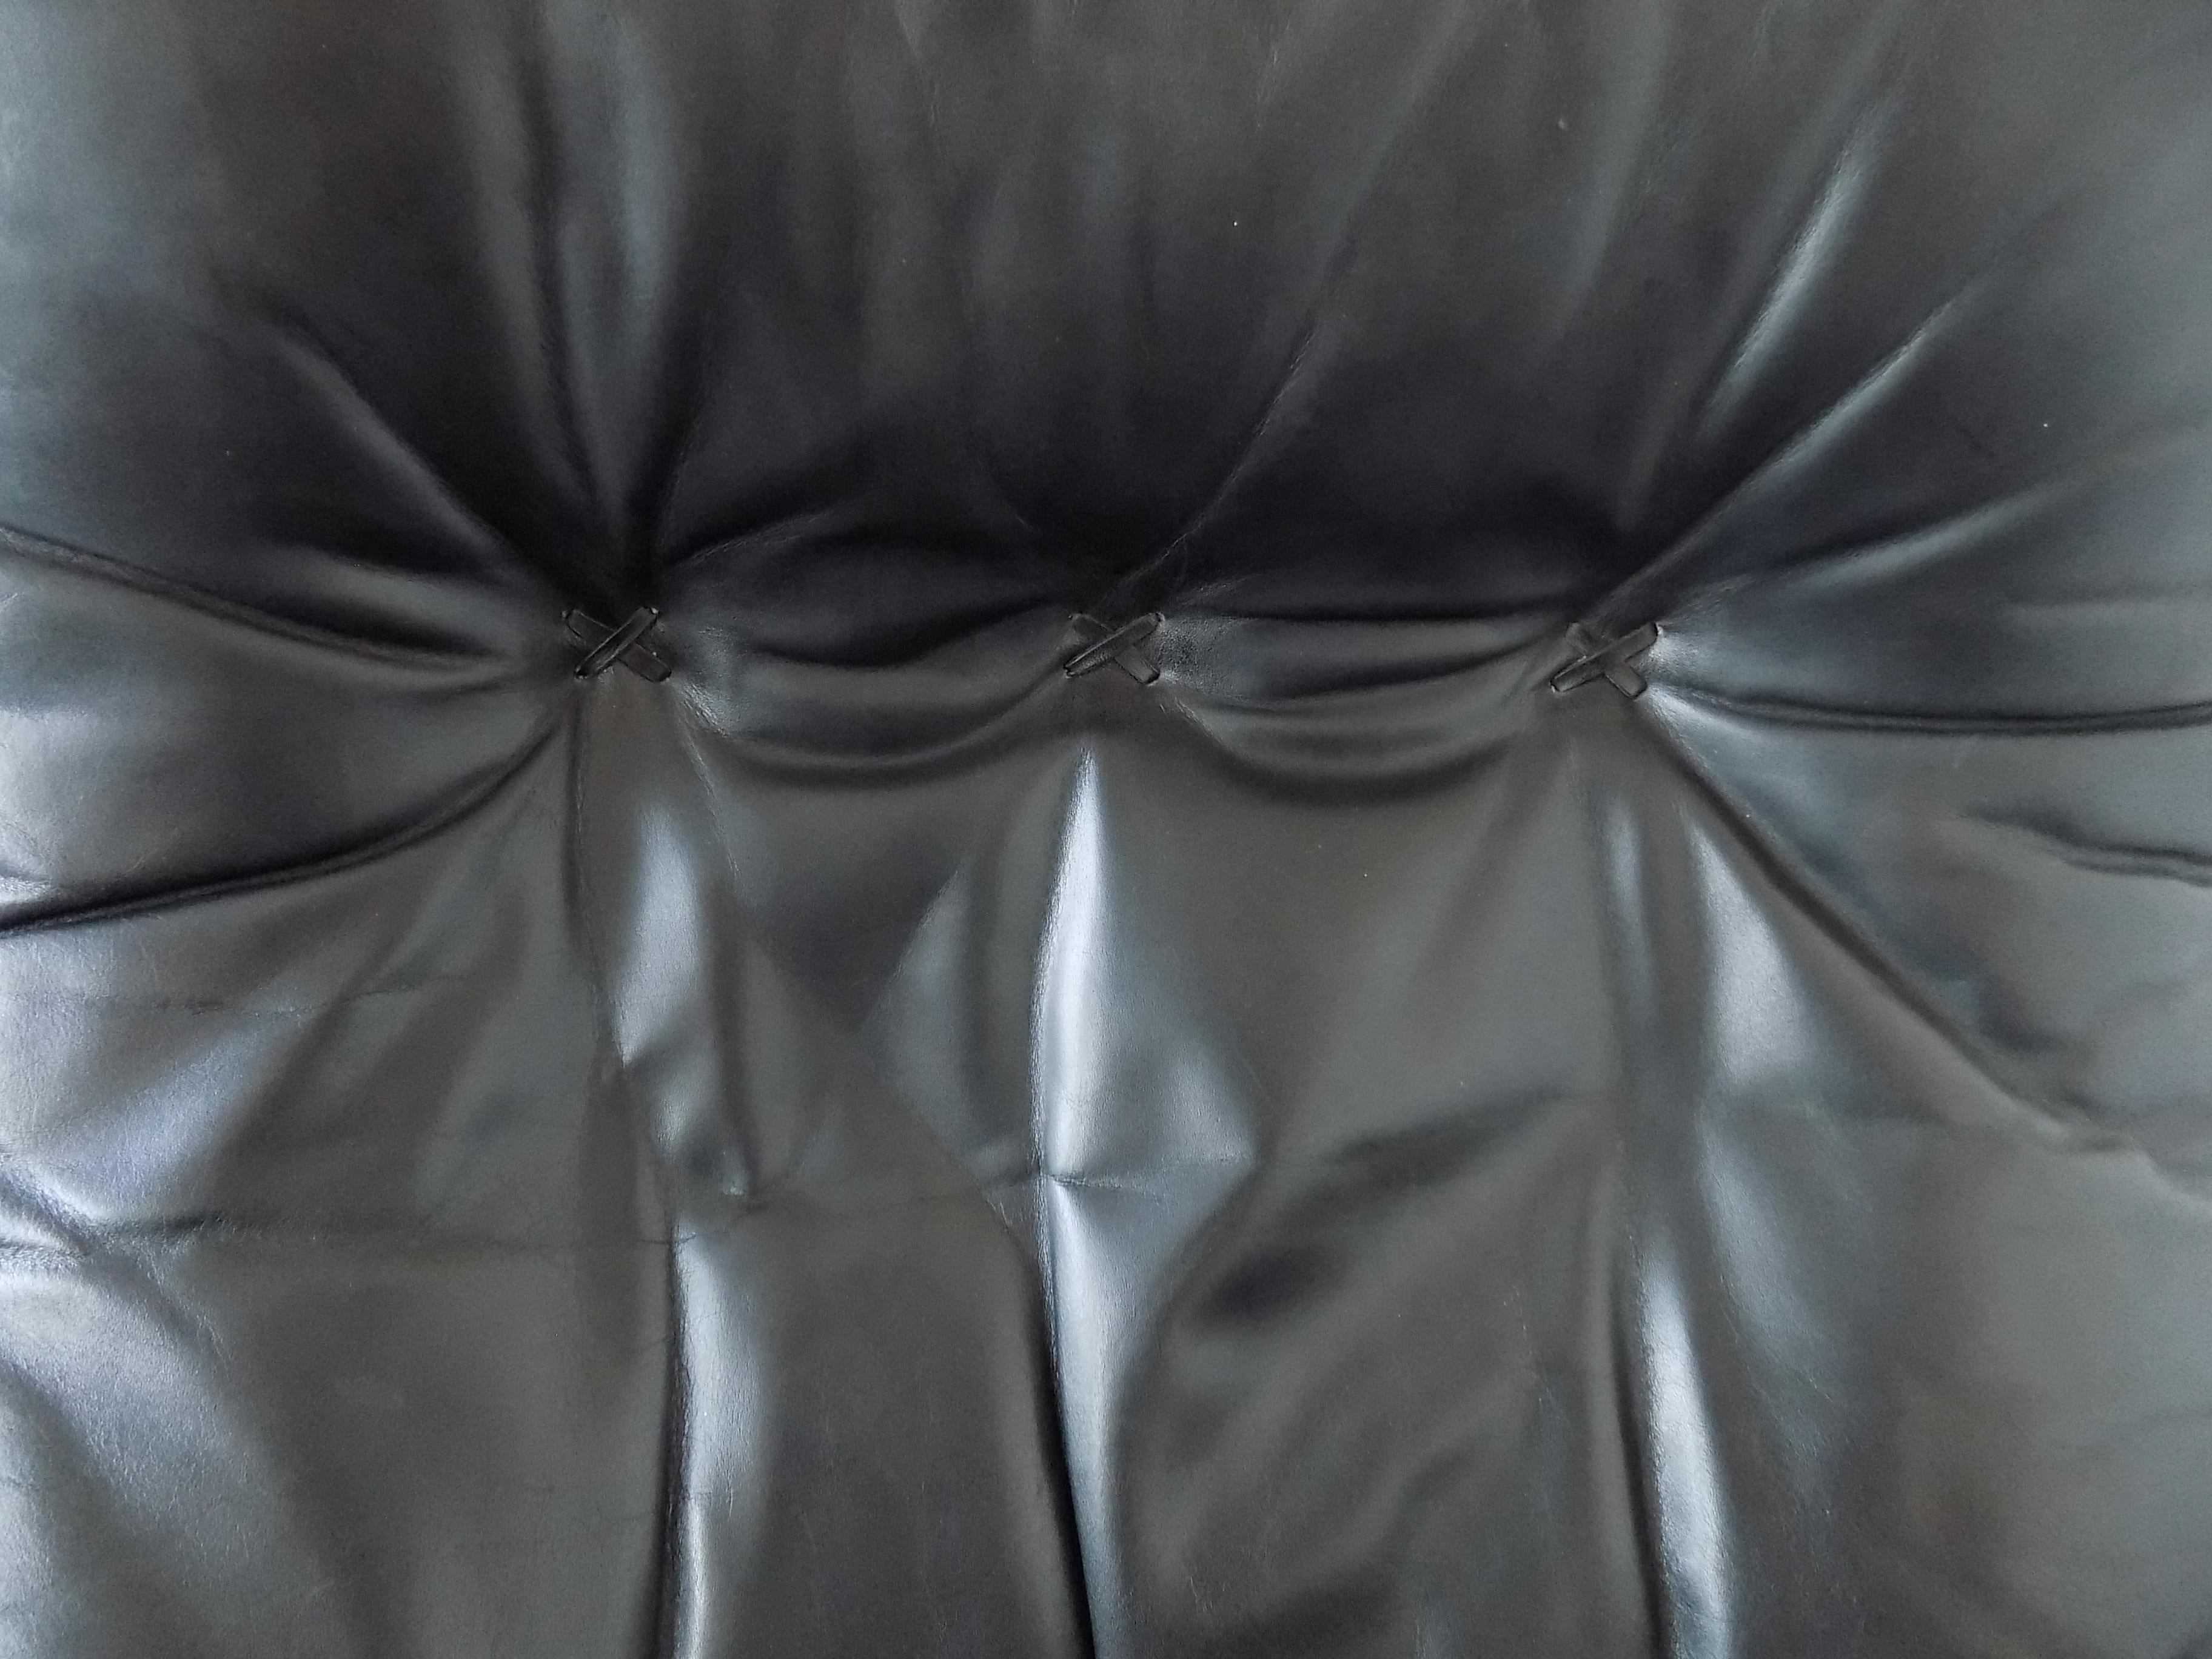 De Sede S 231 The James Bond Chair Black Leather 7